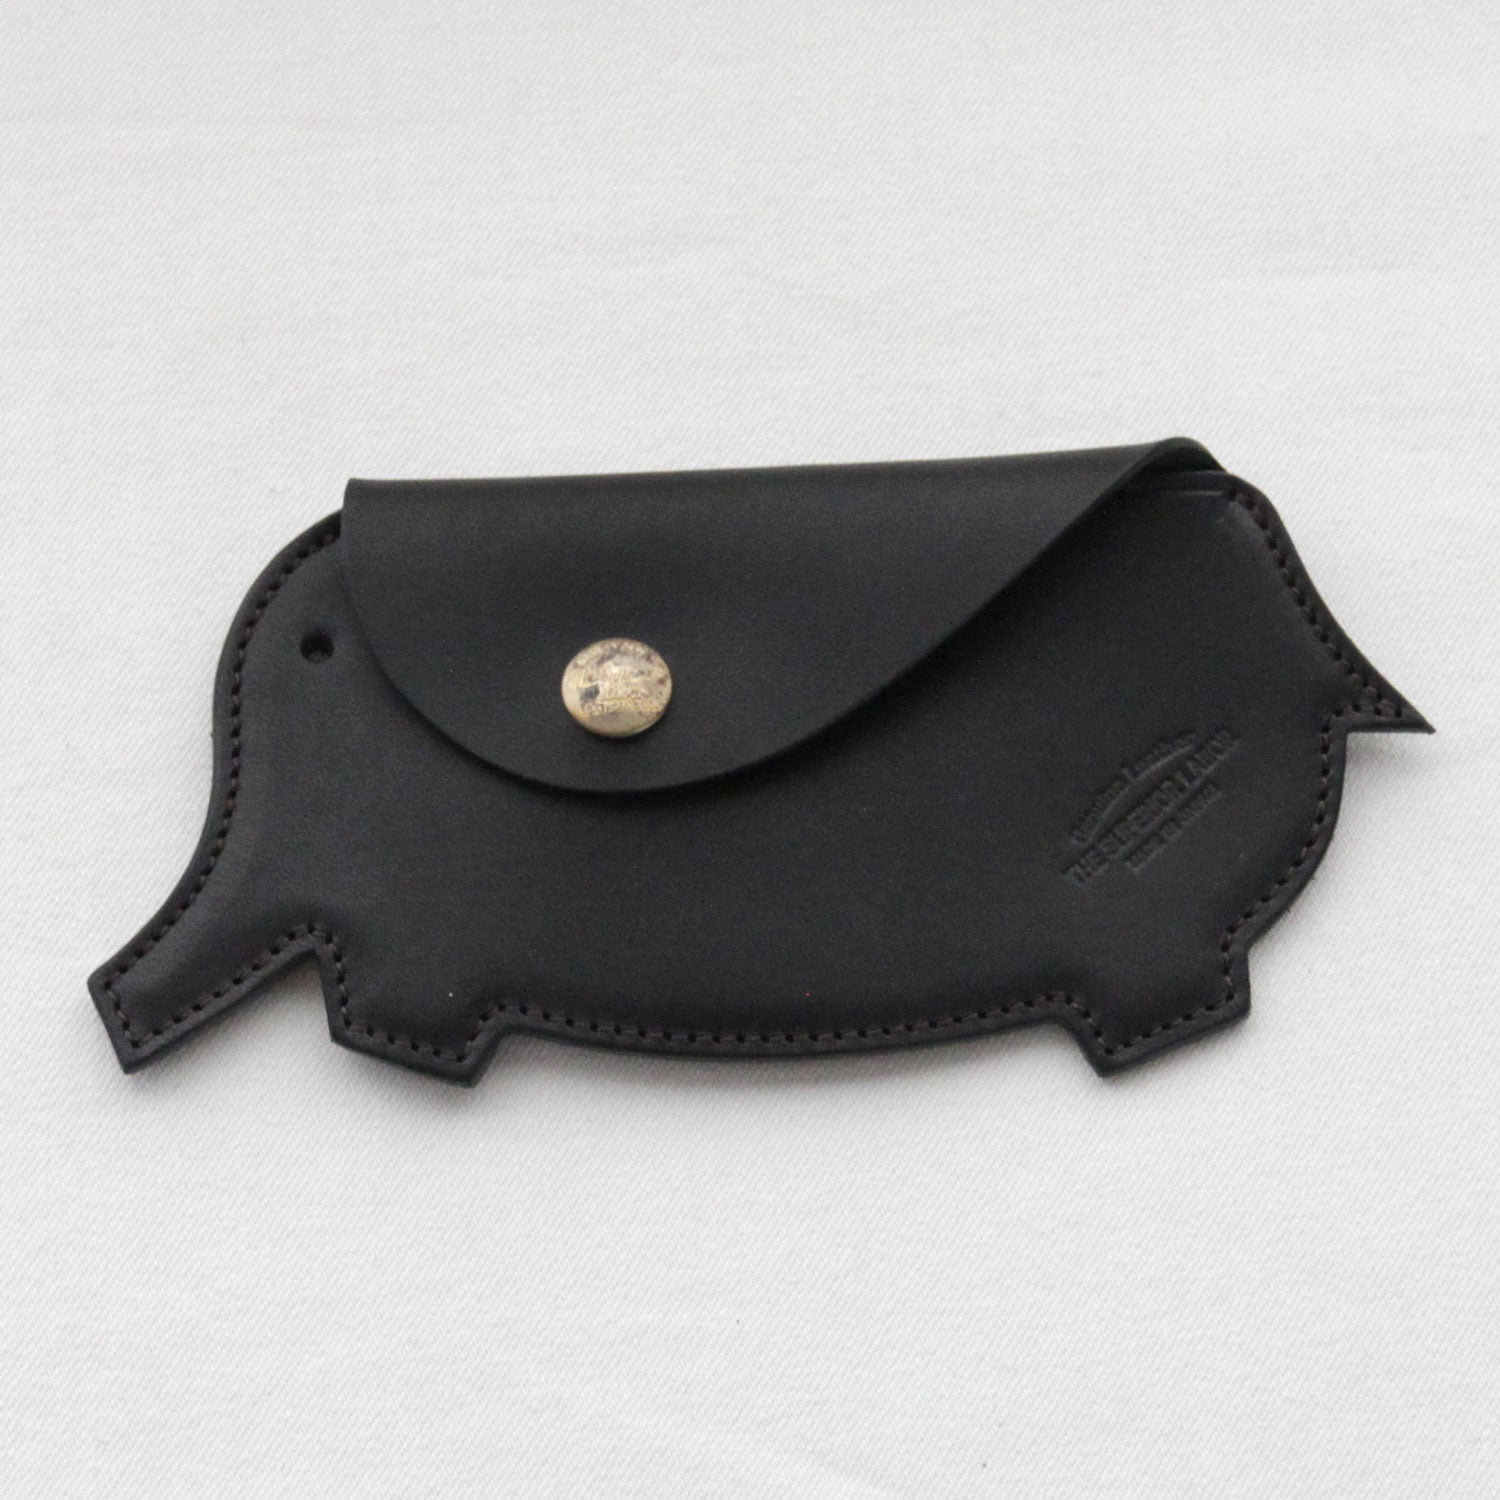 SL0137 elephant purse